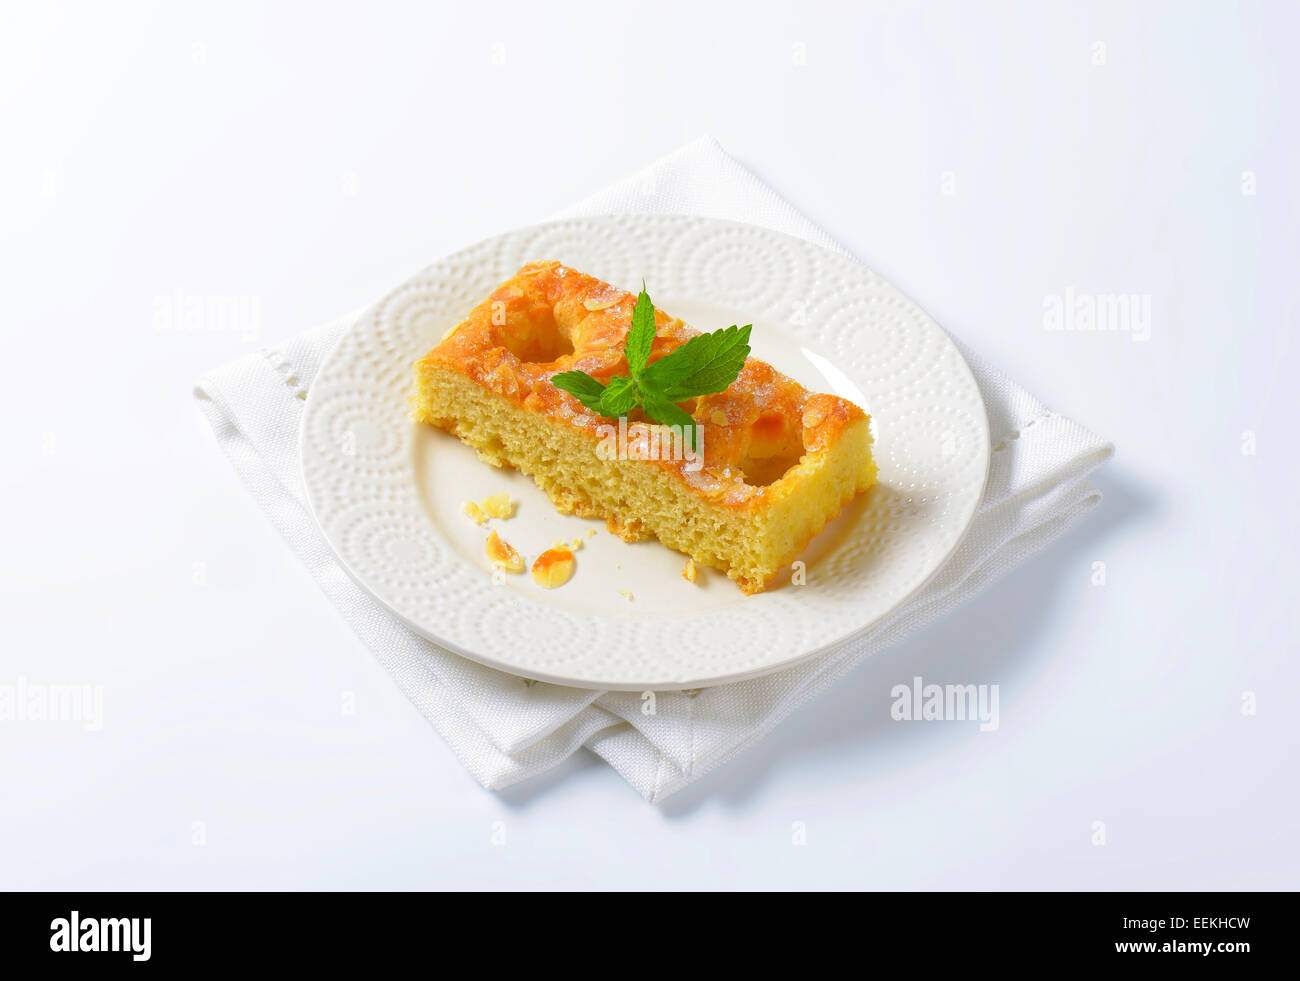 Scheibe Biskuit mit Mandelblättchen garniert Stockfoto